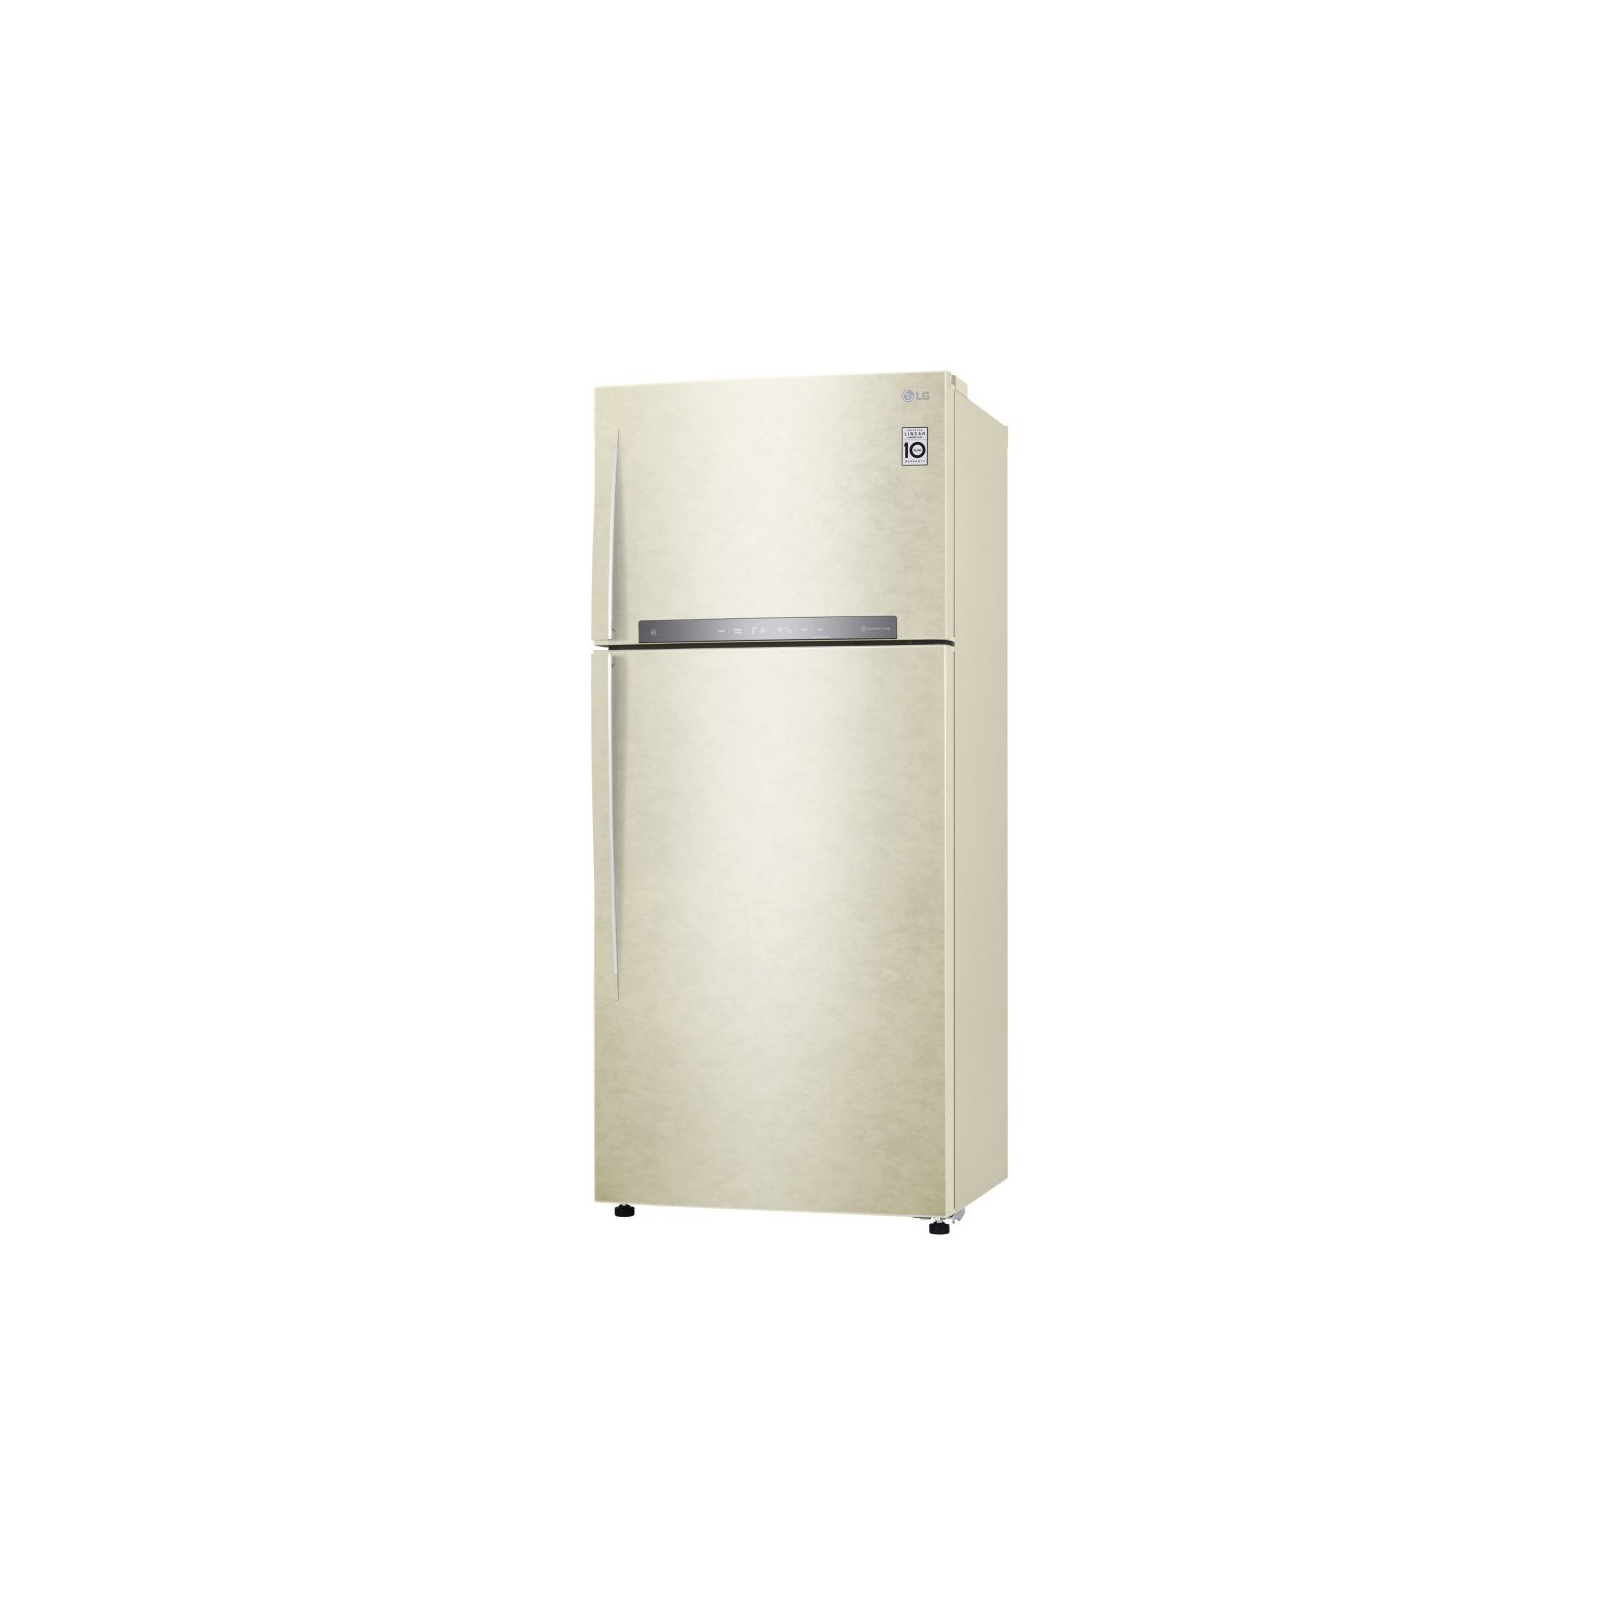 Холодильник LG GN-H702HMHZ изображение 2